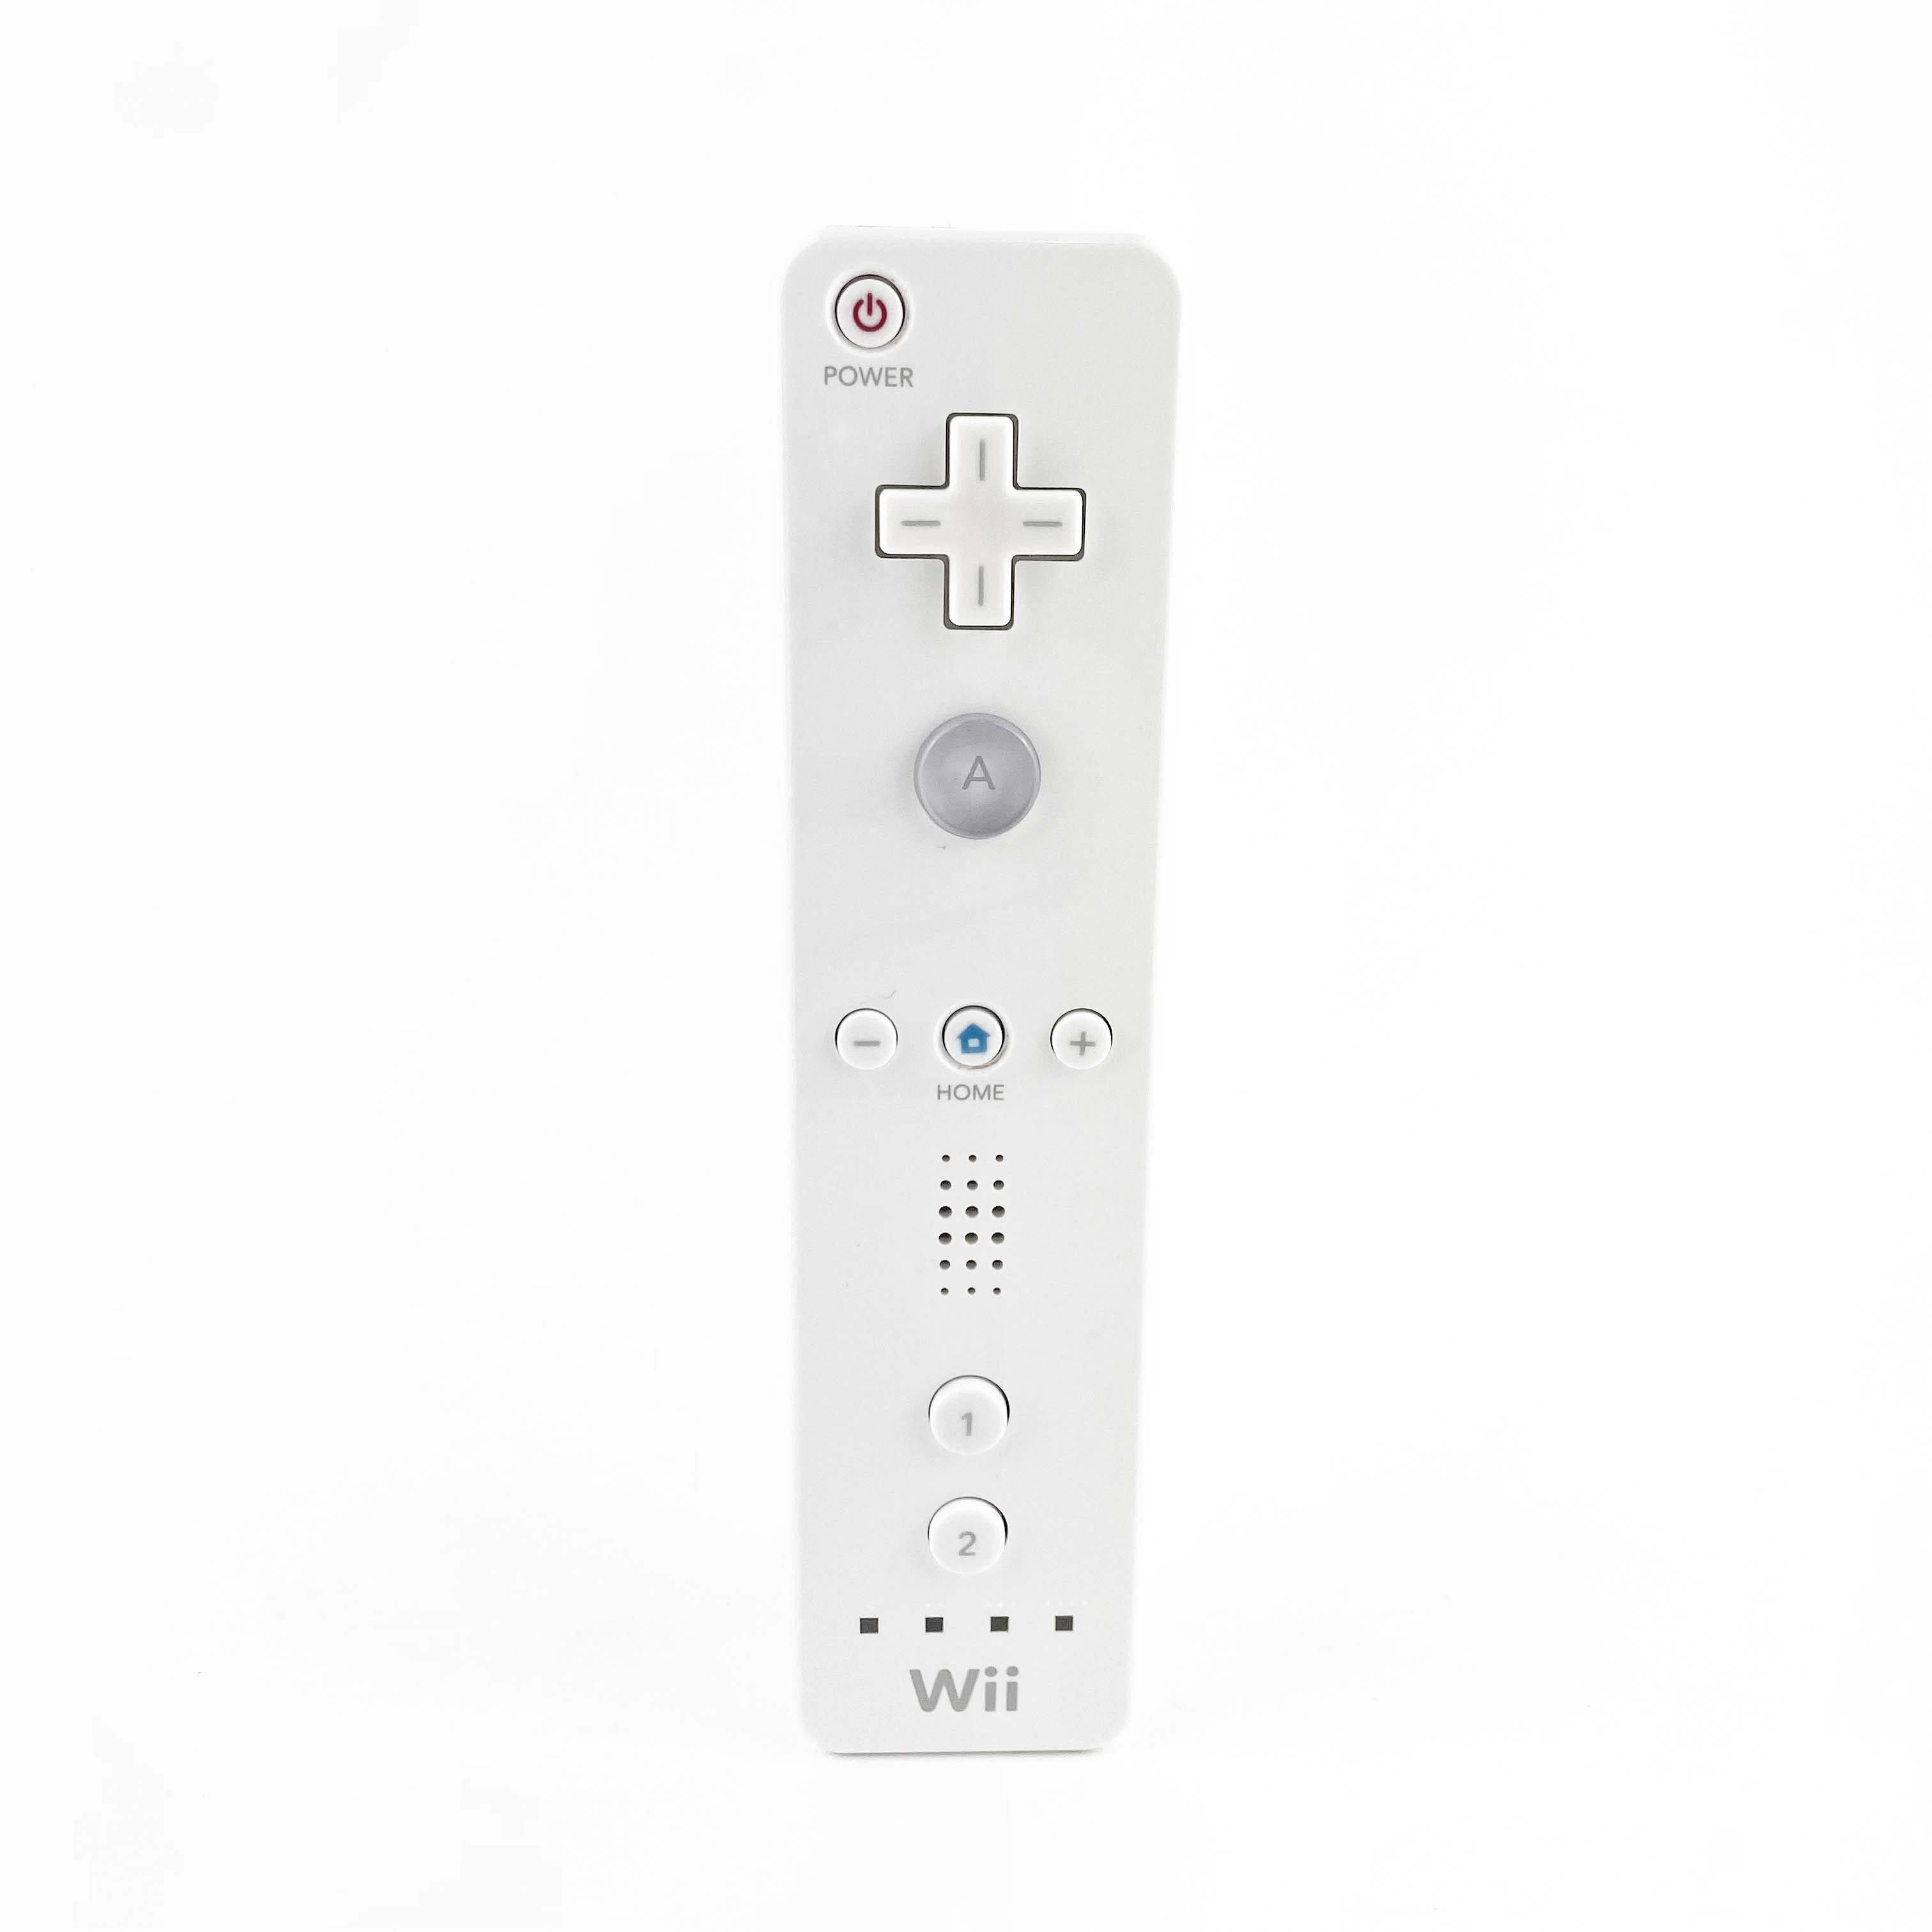 Nintendo Wii Remote Controller White (RVL-003)